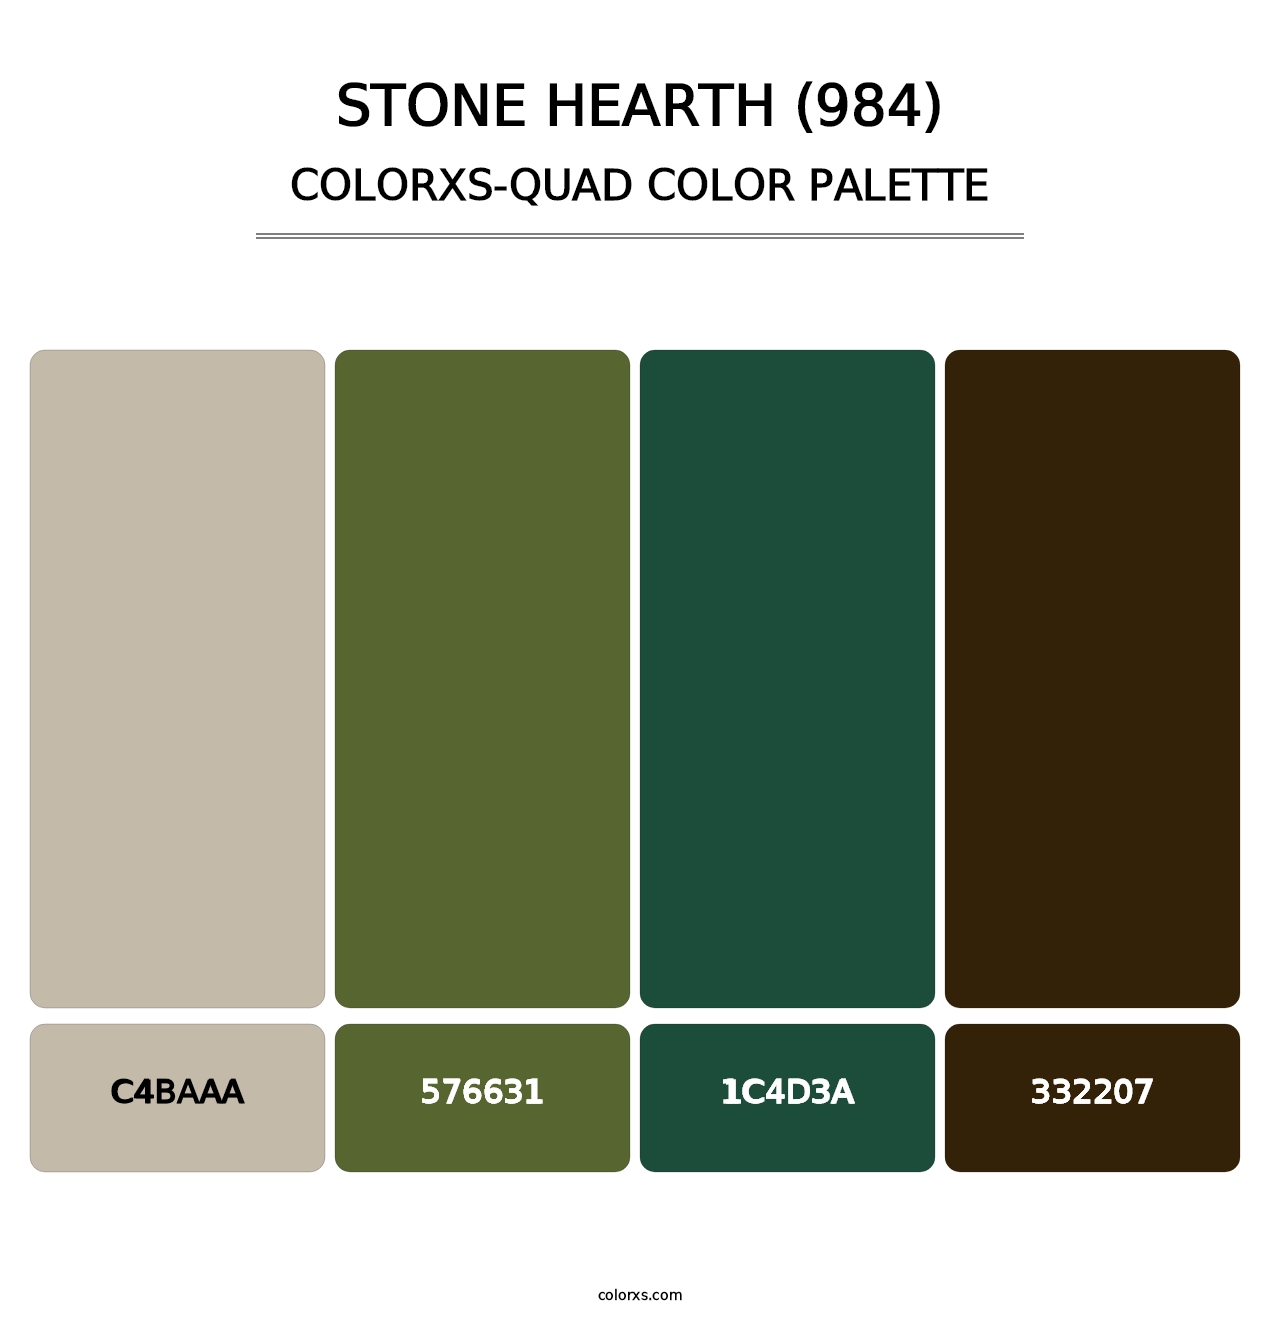 Stone Hearth (984) - Colorxs Quad Palette